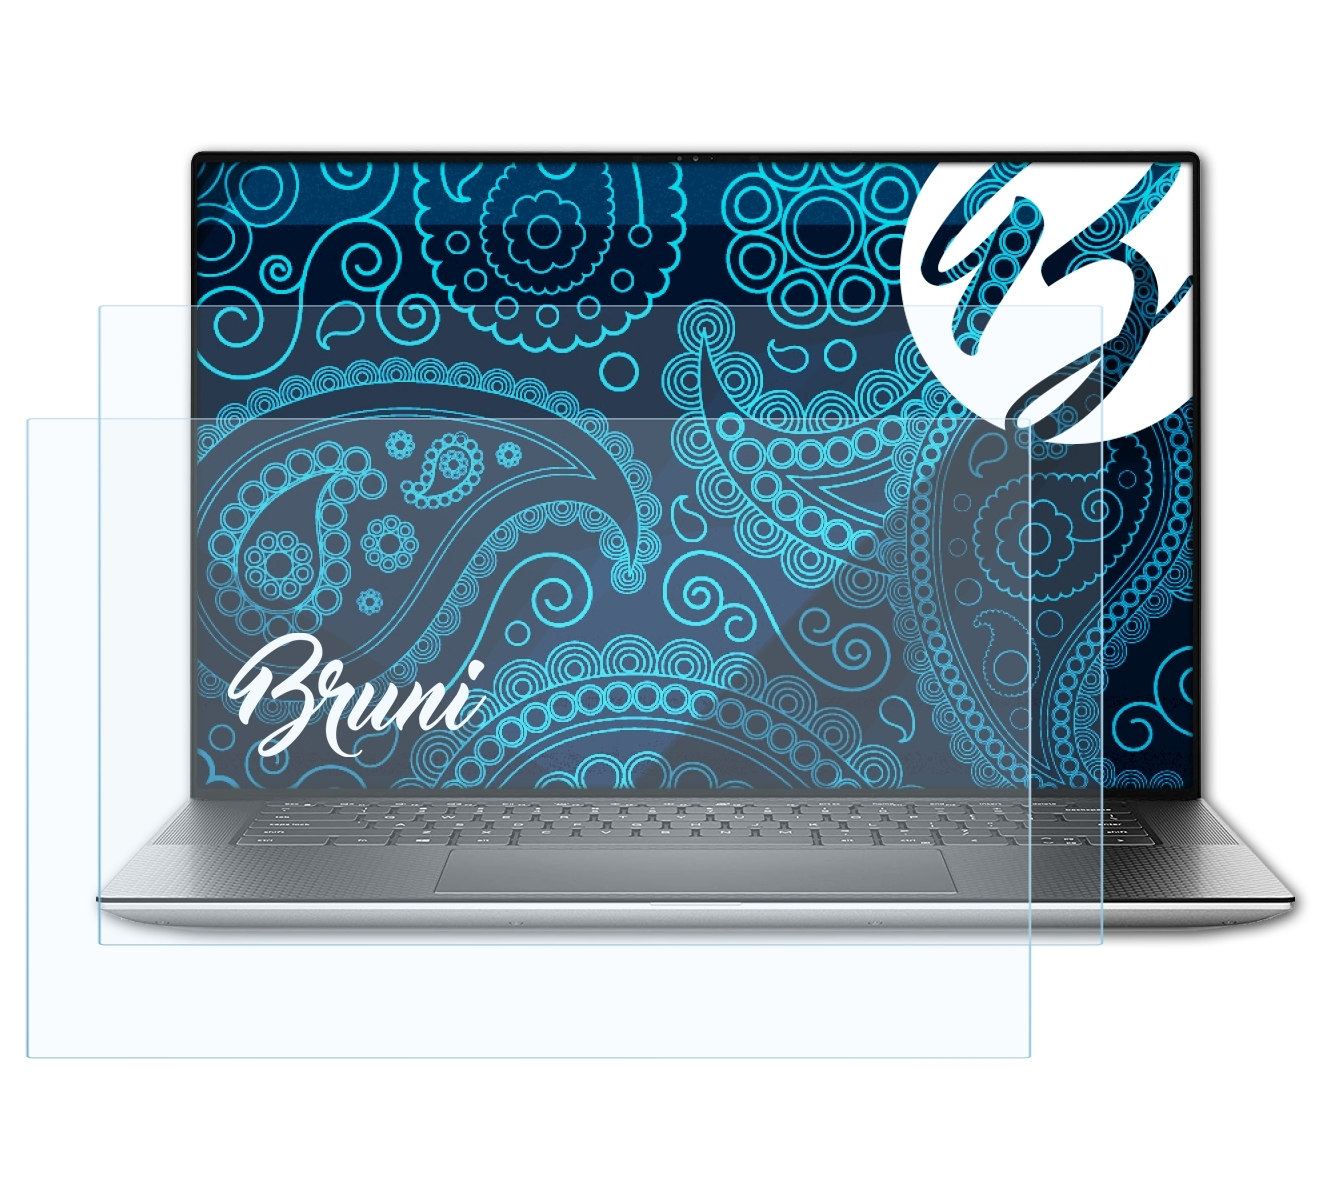 BRUNI 2x Basics-Clear XPS 15 (9500)) Dell Schutzfolie(für